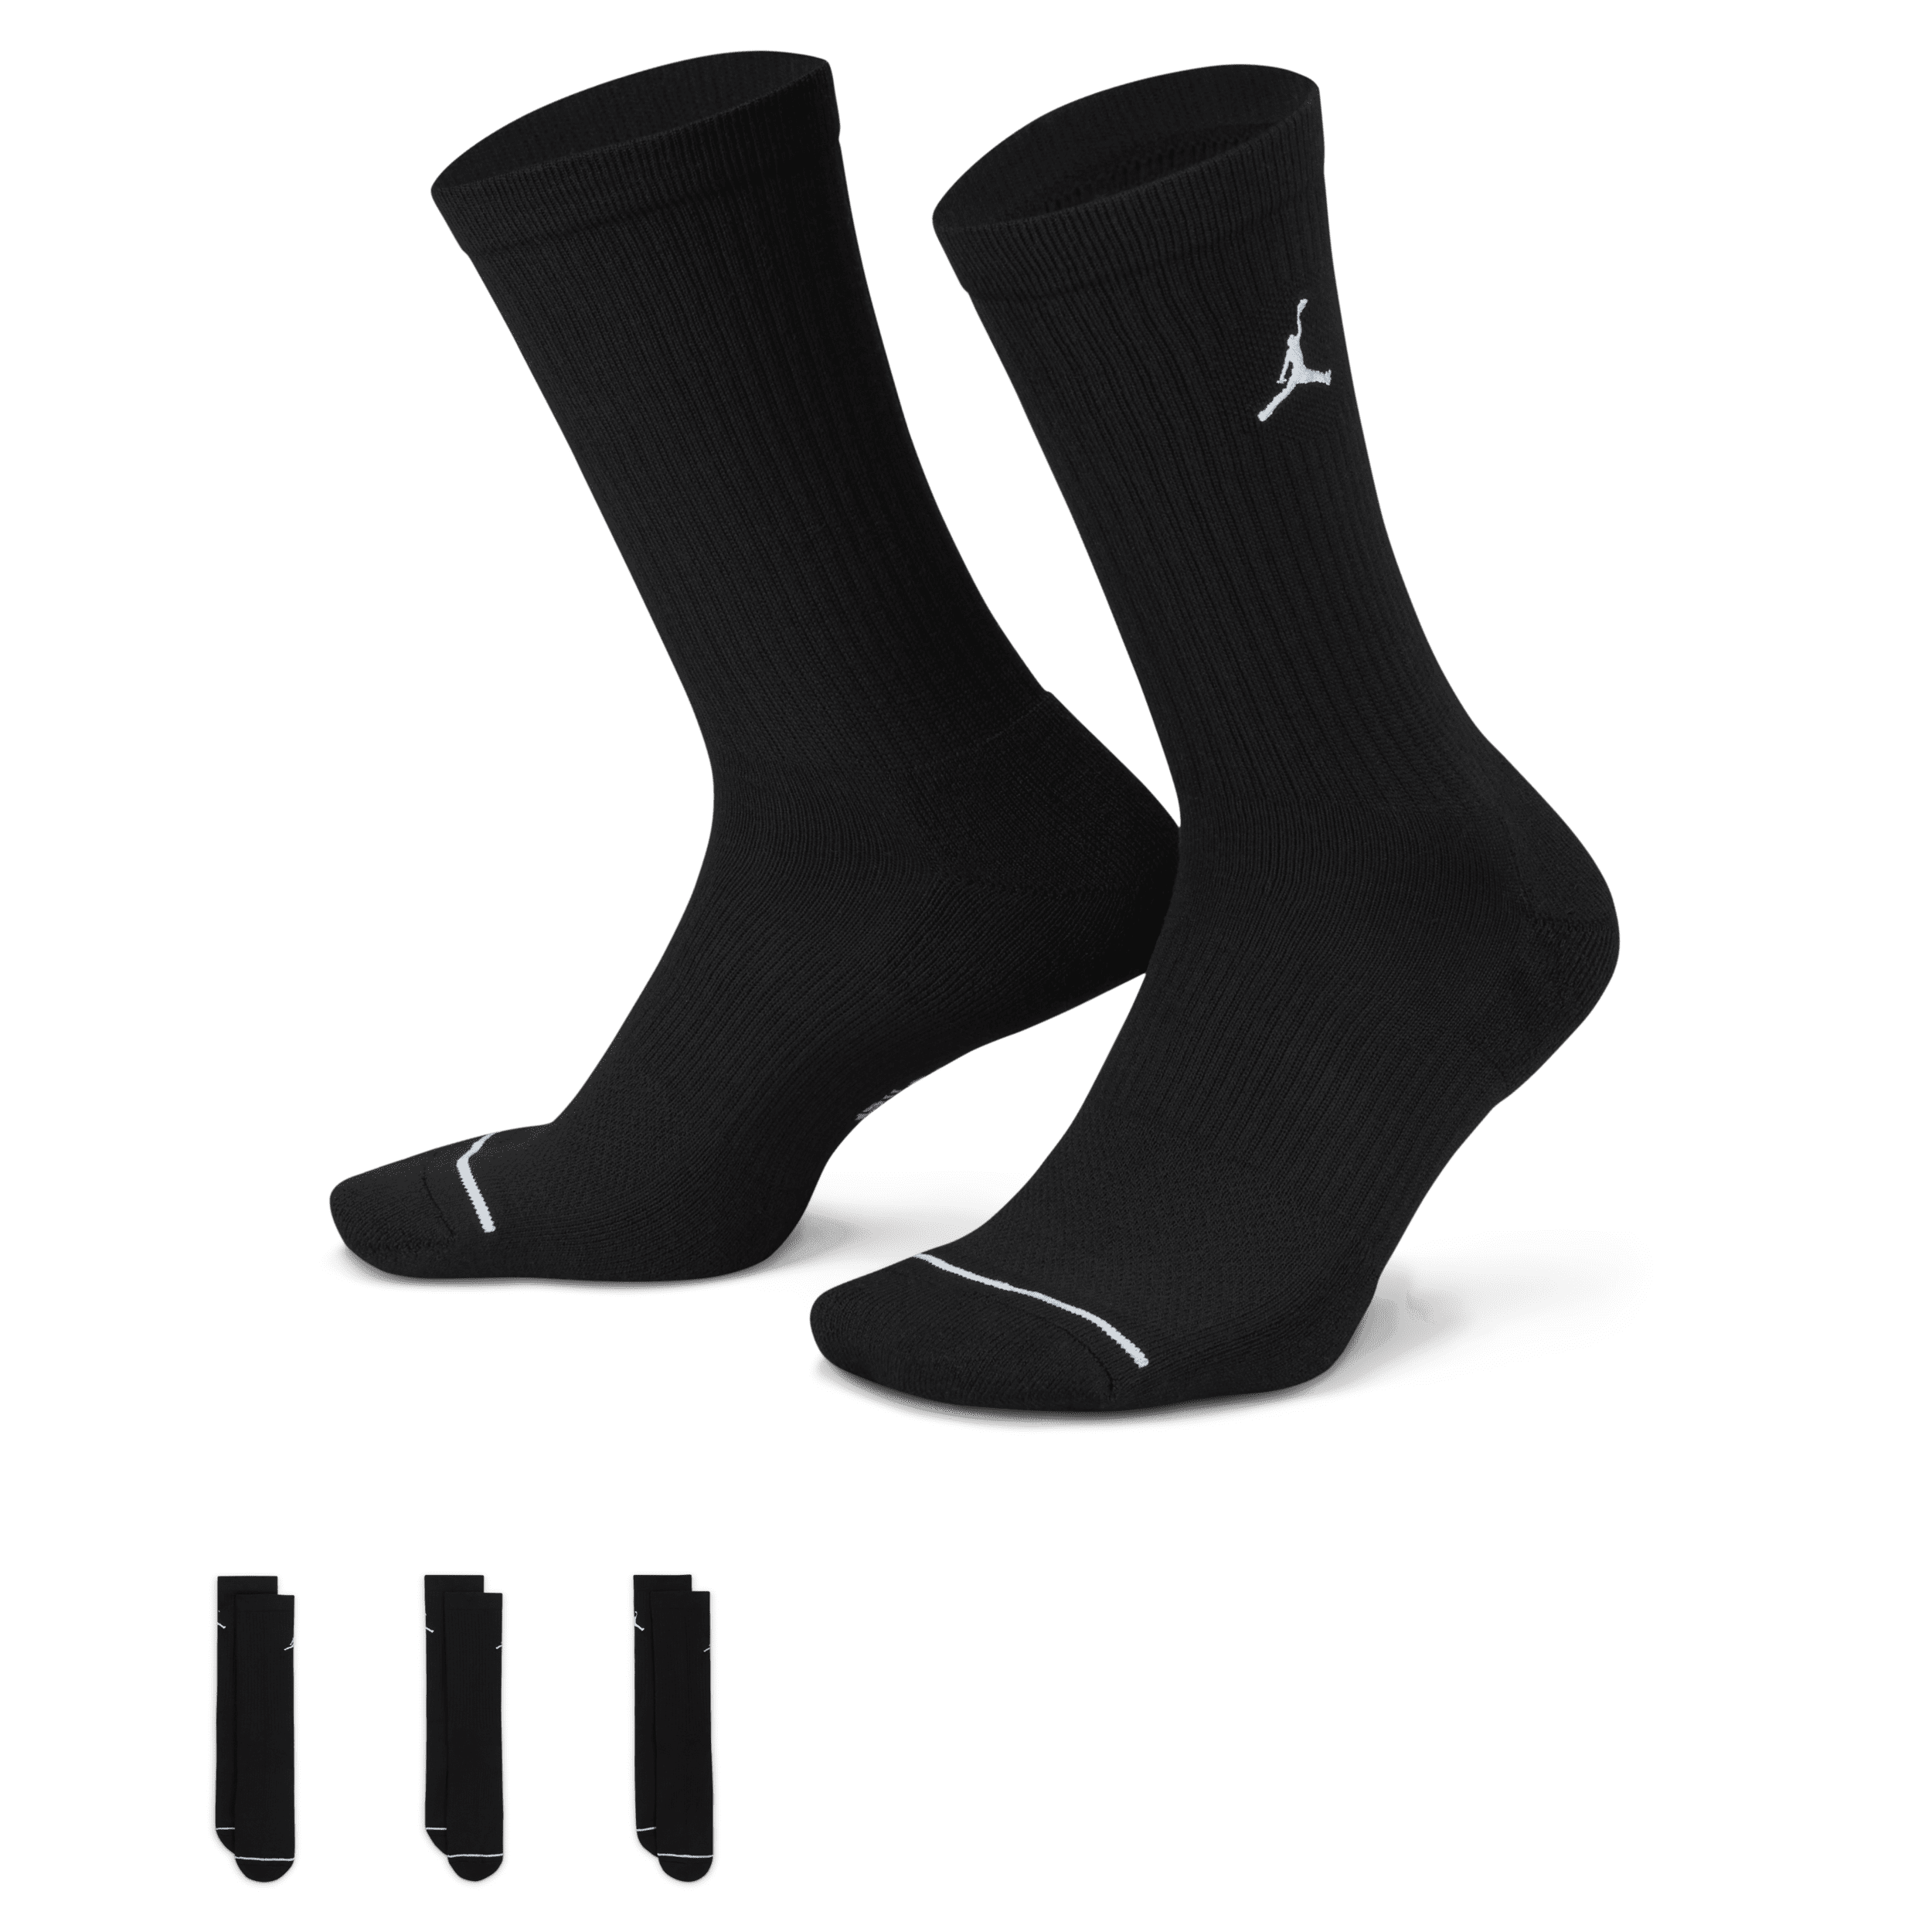 Jordan-hverdagscrewstrømper (3 par) - sort